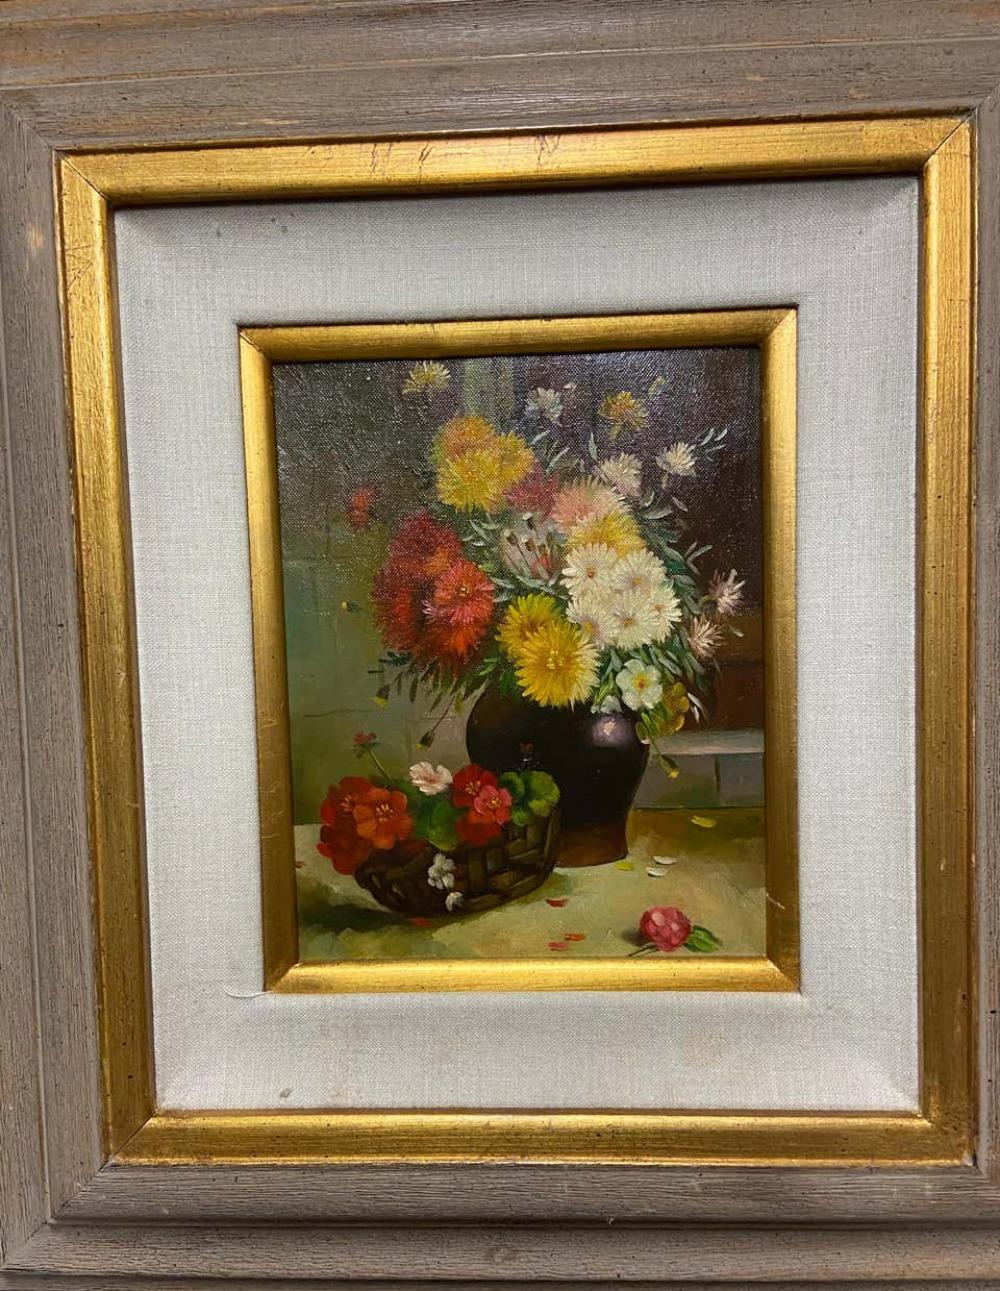 Il s'agit d'une peinture à l'huile sur toile représentant une nature morte avec des fleurs. La pièce a été réalisée dans les années 1980. 

Encadré : 21.5 